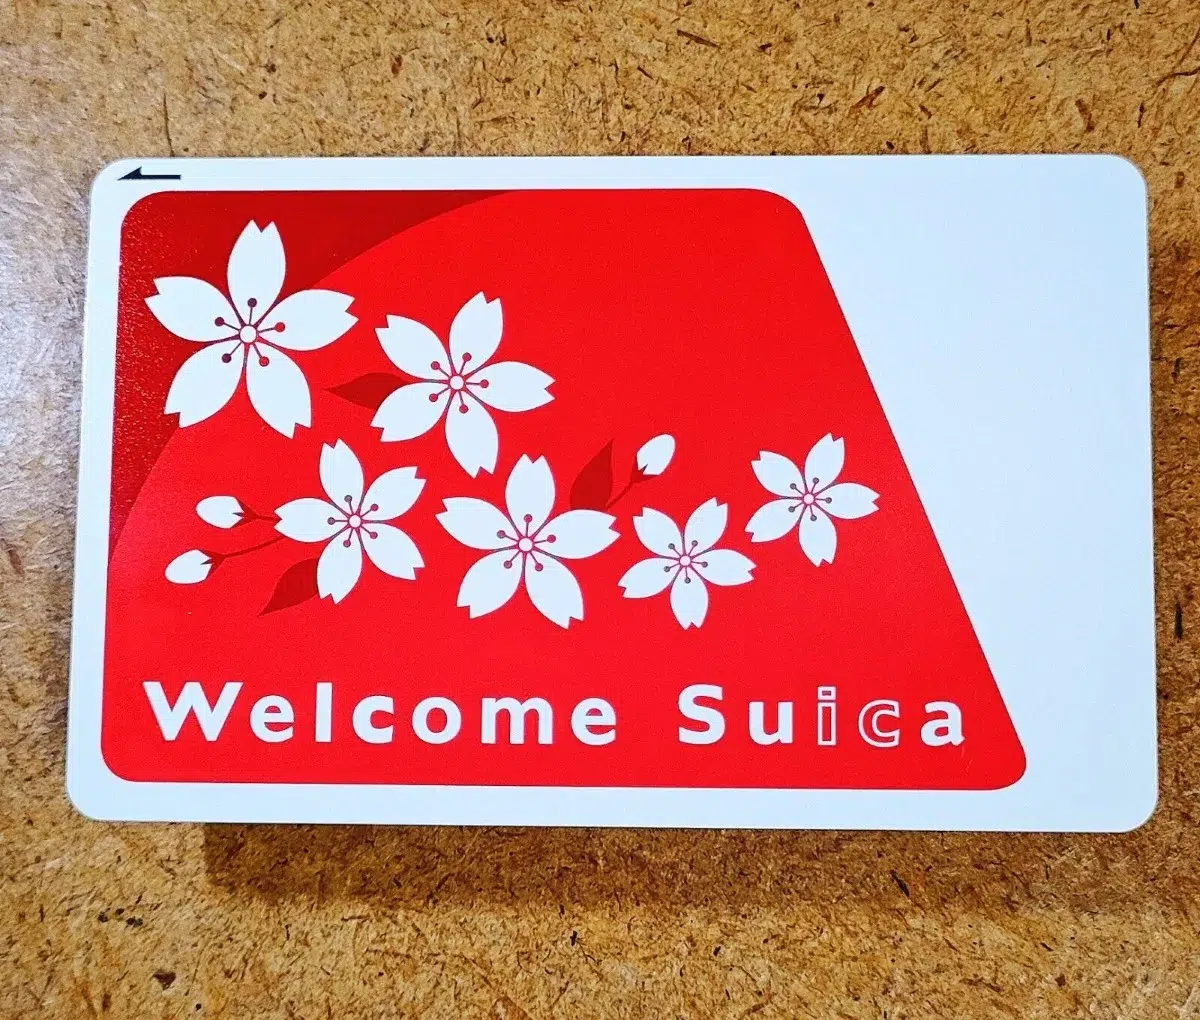 Dónde comprar la tarjeta Welcome Suica por internet, qué es y cómo se usa